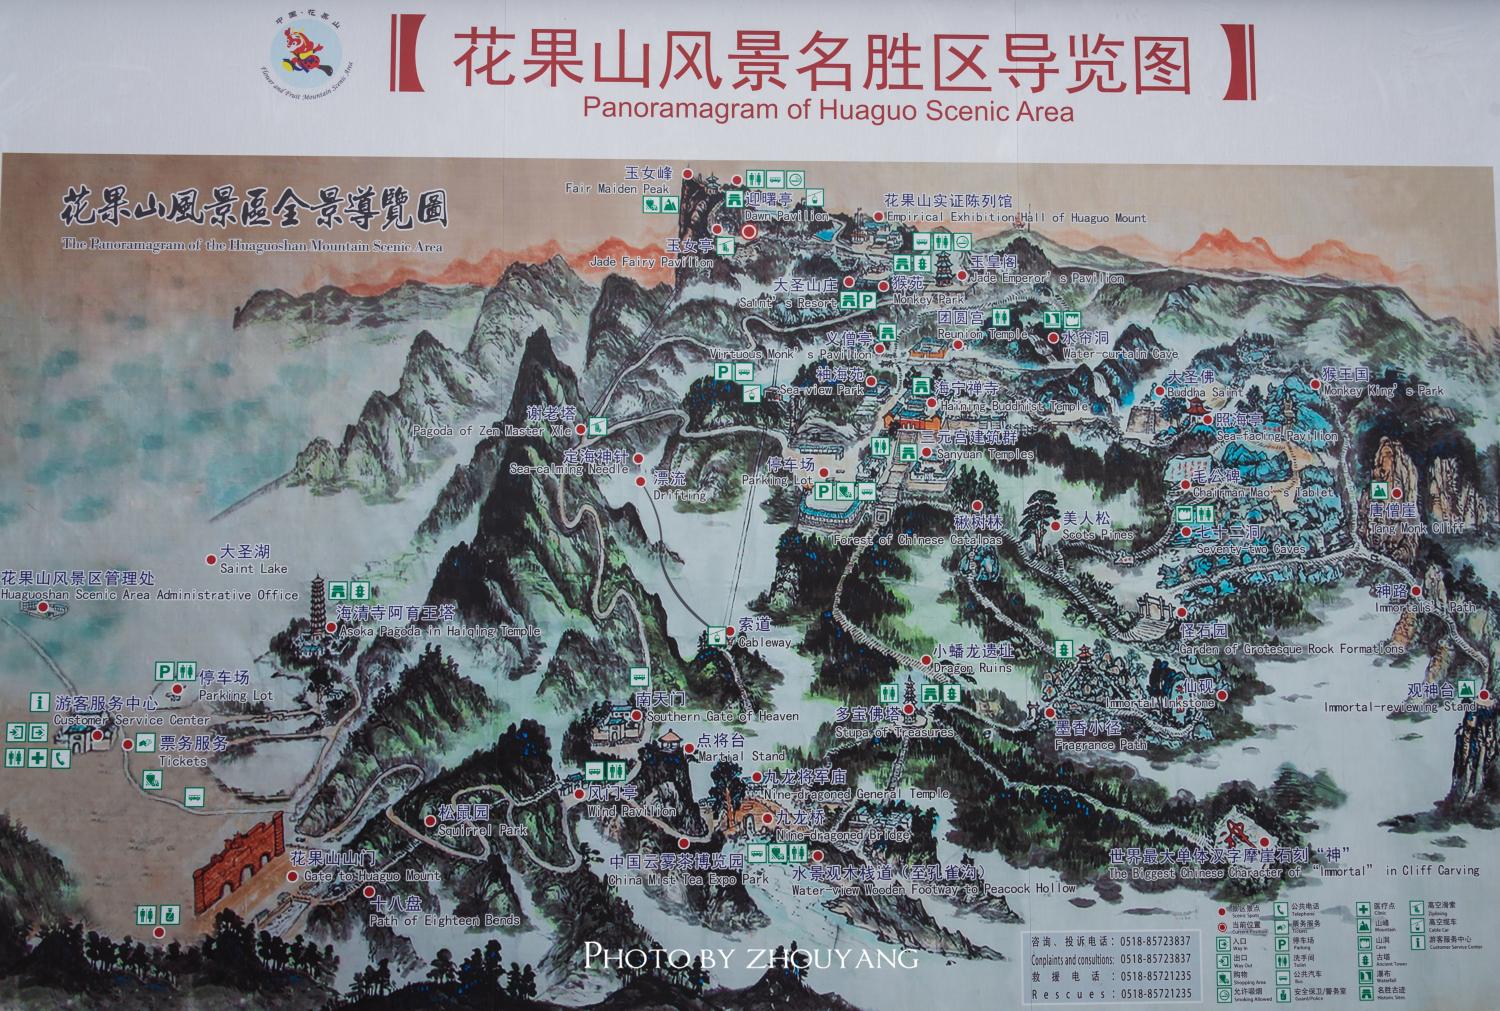 江苏最高峰原来是孙悟空的老家花果山,每年都